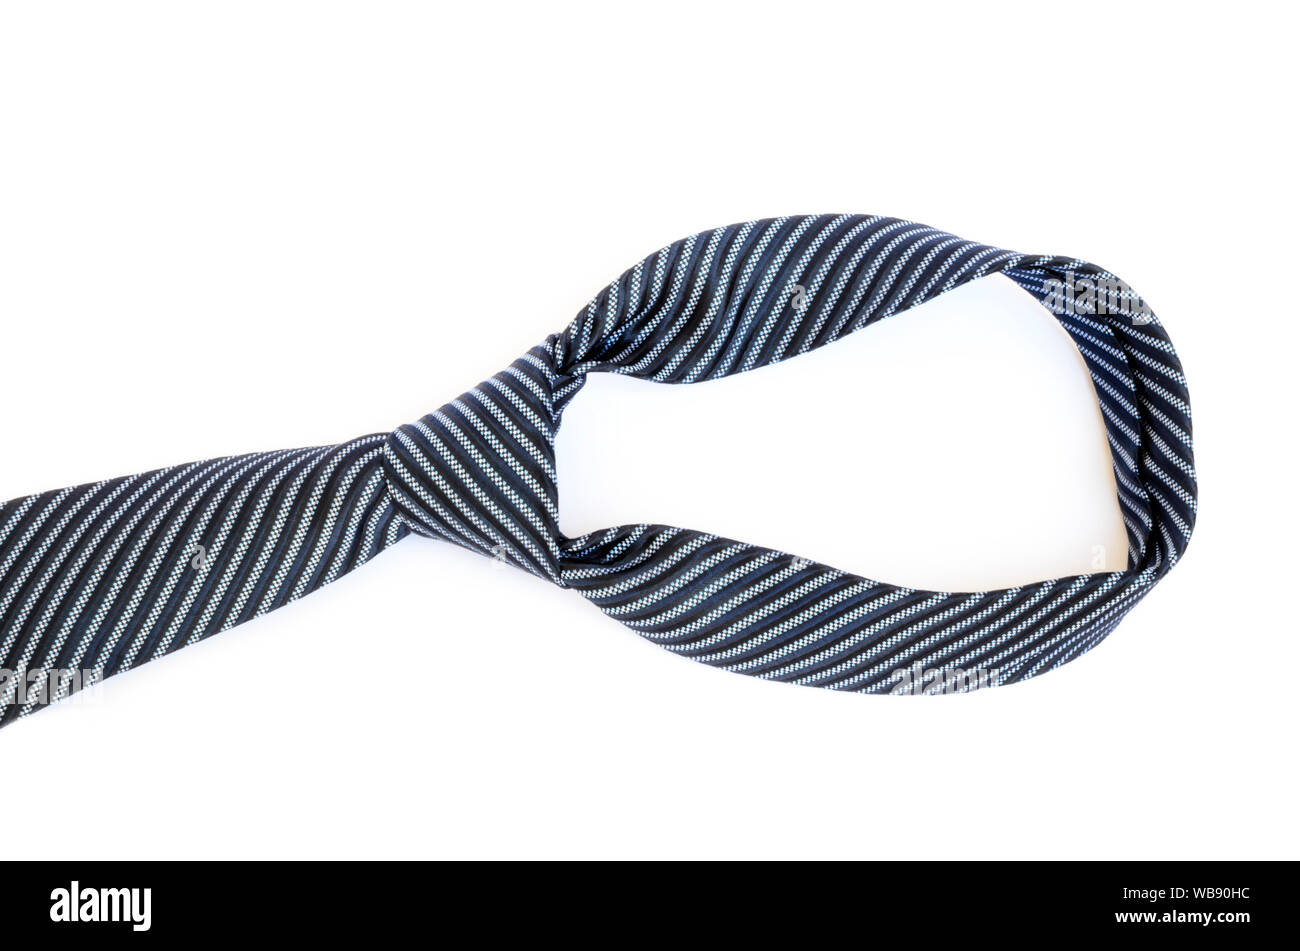 Nœud de cravate bleu sur fond blanc. Concept d'affaires Banque D'Images